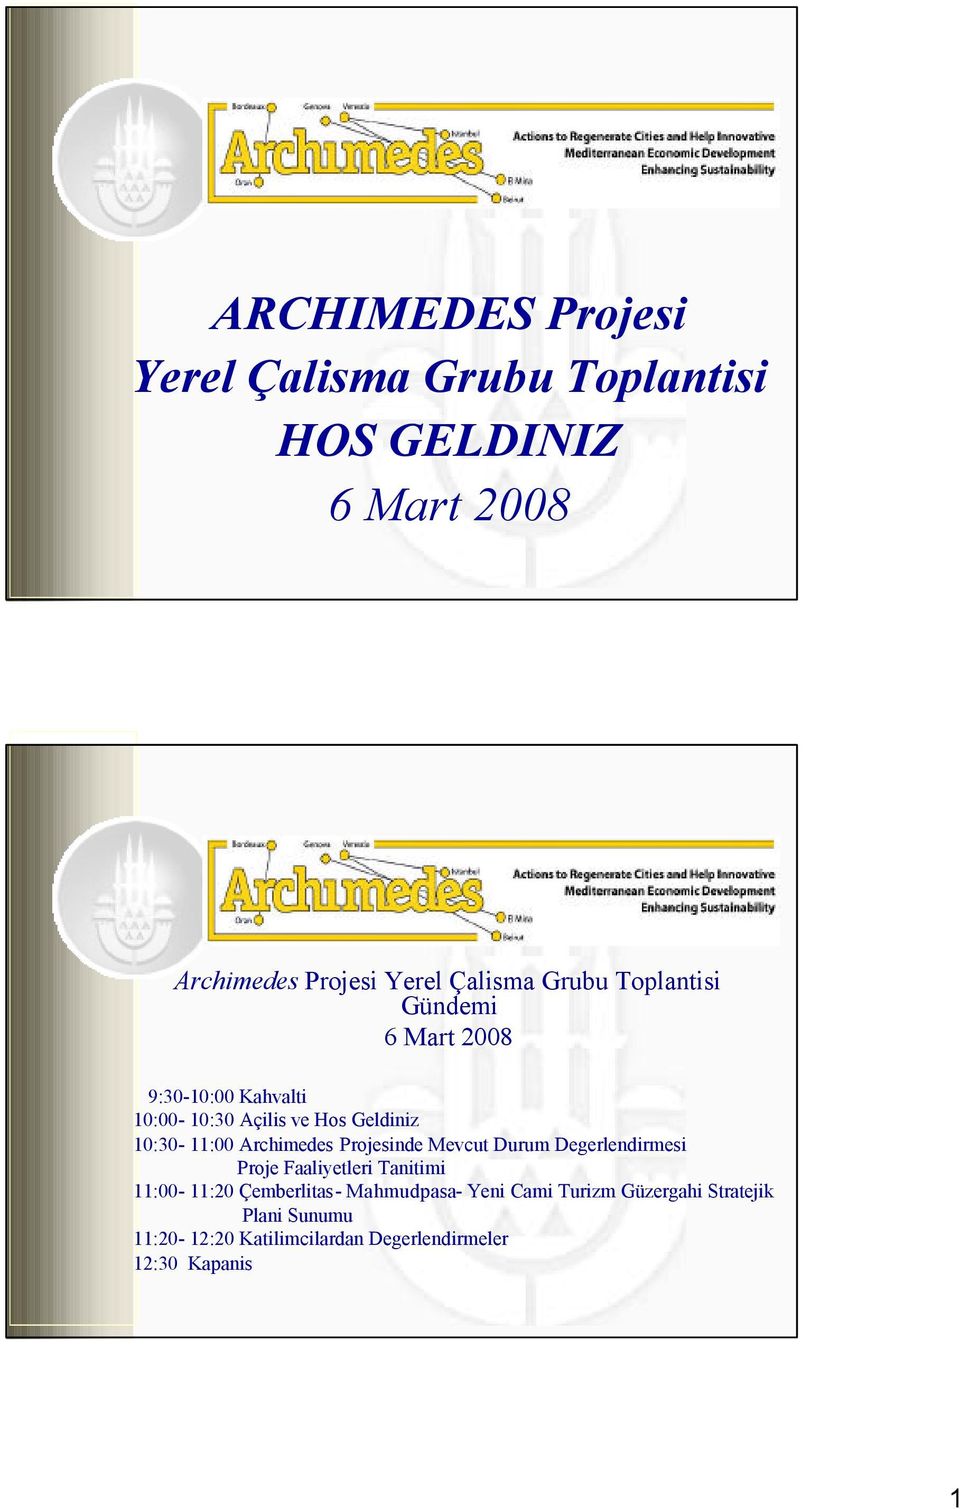 Archimedes Projesinde Mevcut Durum Degerlendirmesi Proje Faaliyetleri Tanitimi 11:00-11:20 Çemberlitas-